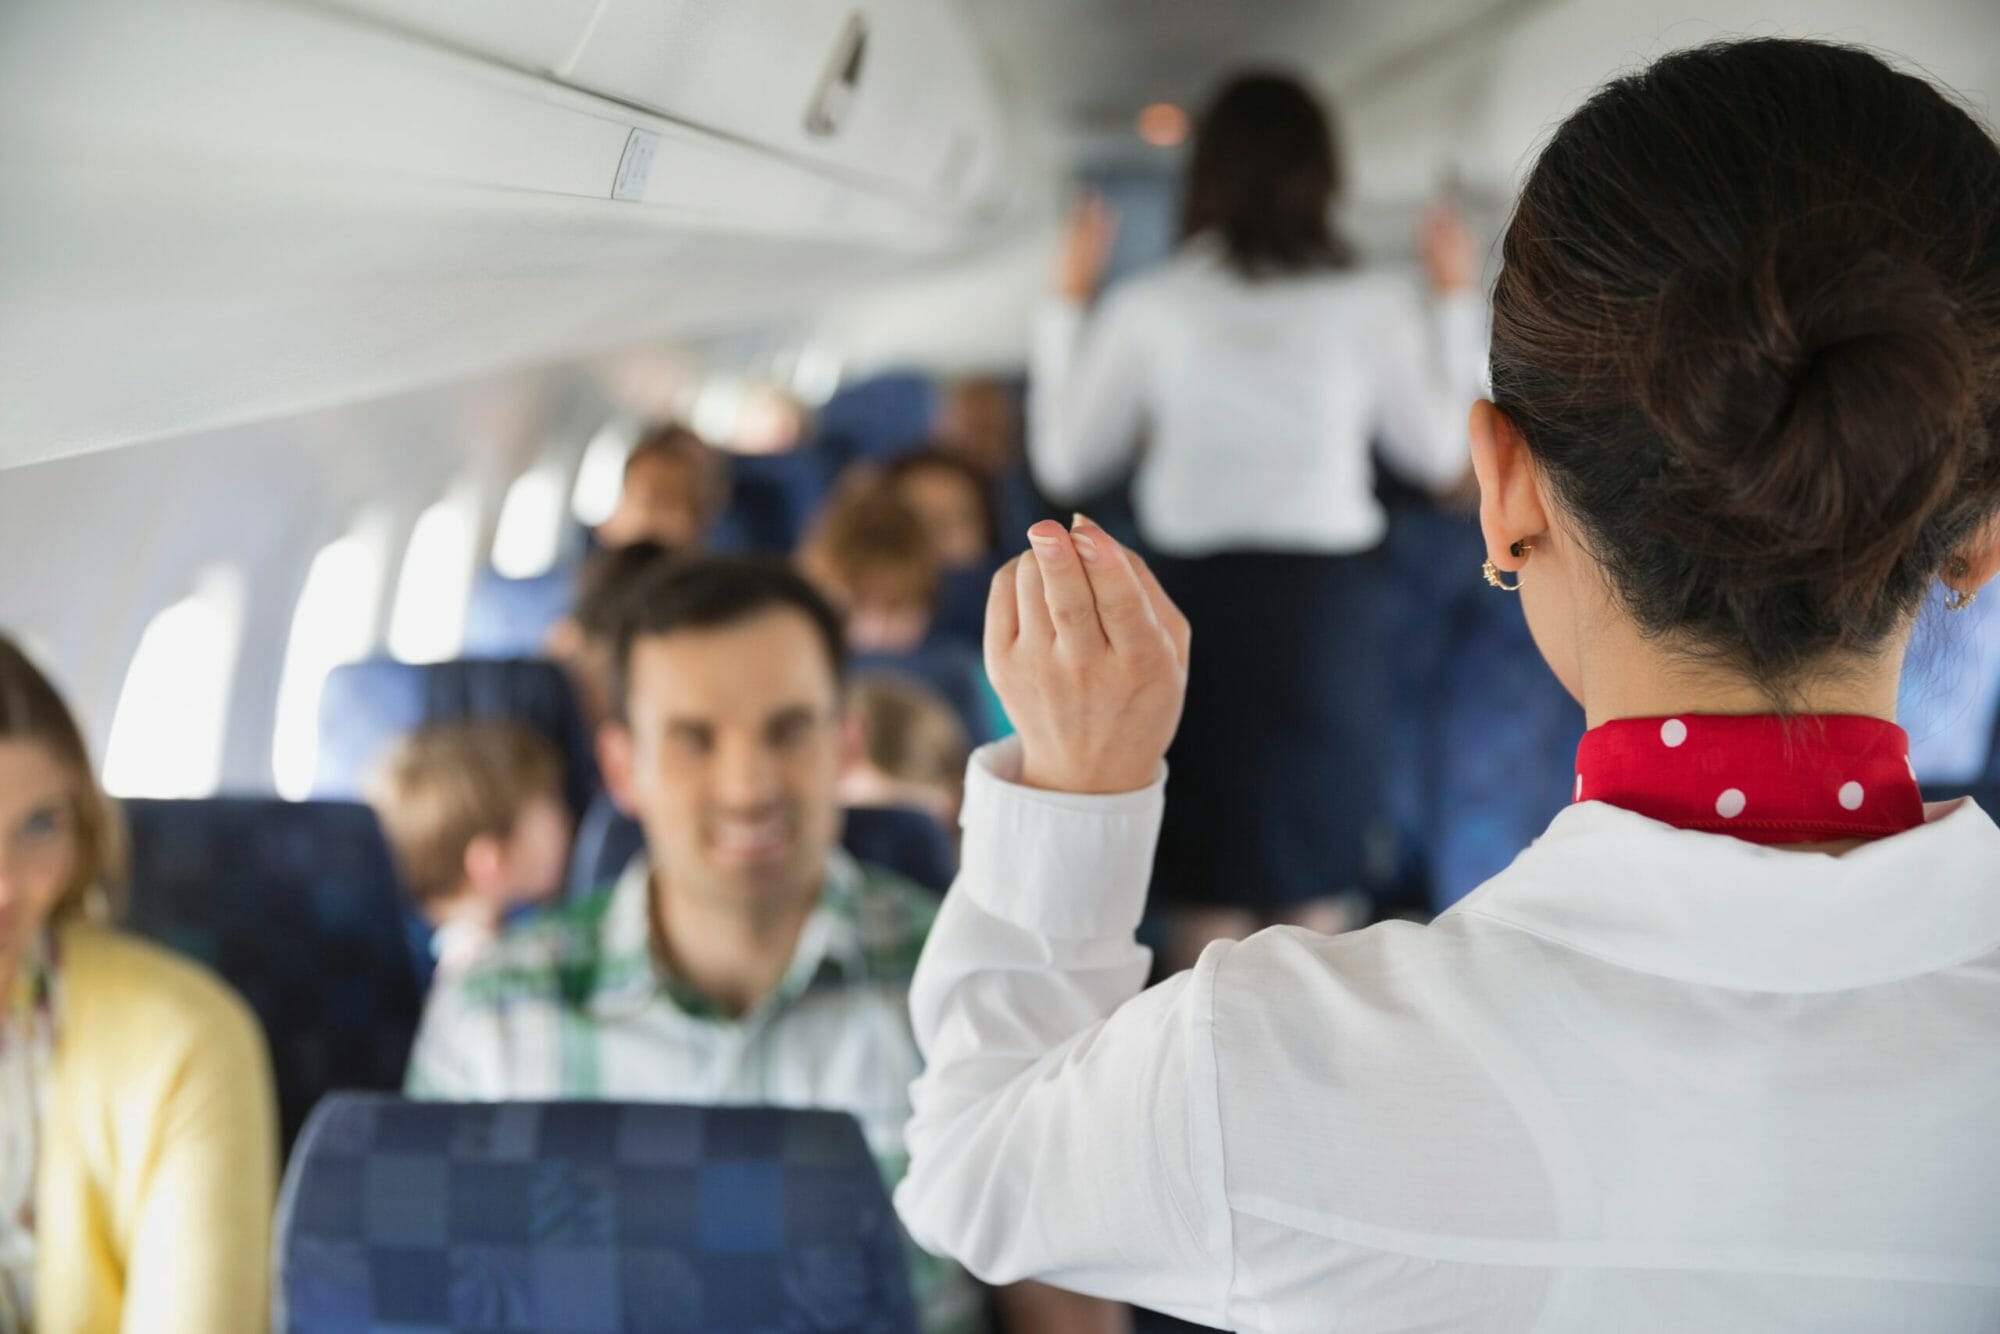 ينظر مضيفو الطيران الى المسافرين خلال صعودهم الطائرة لمعرفة الأشخاص الأصحاء